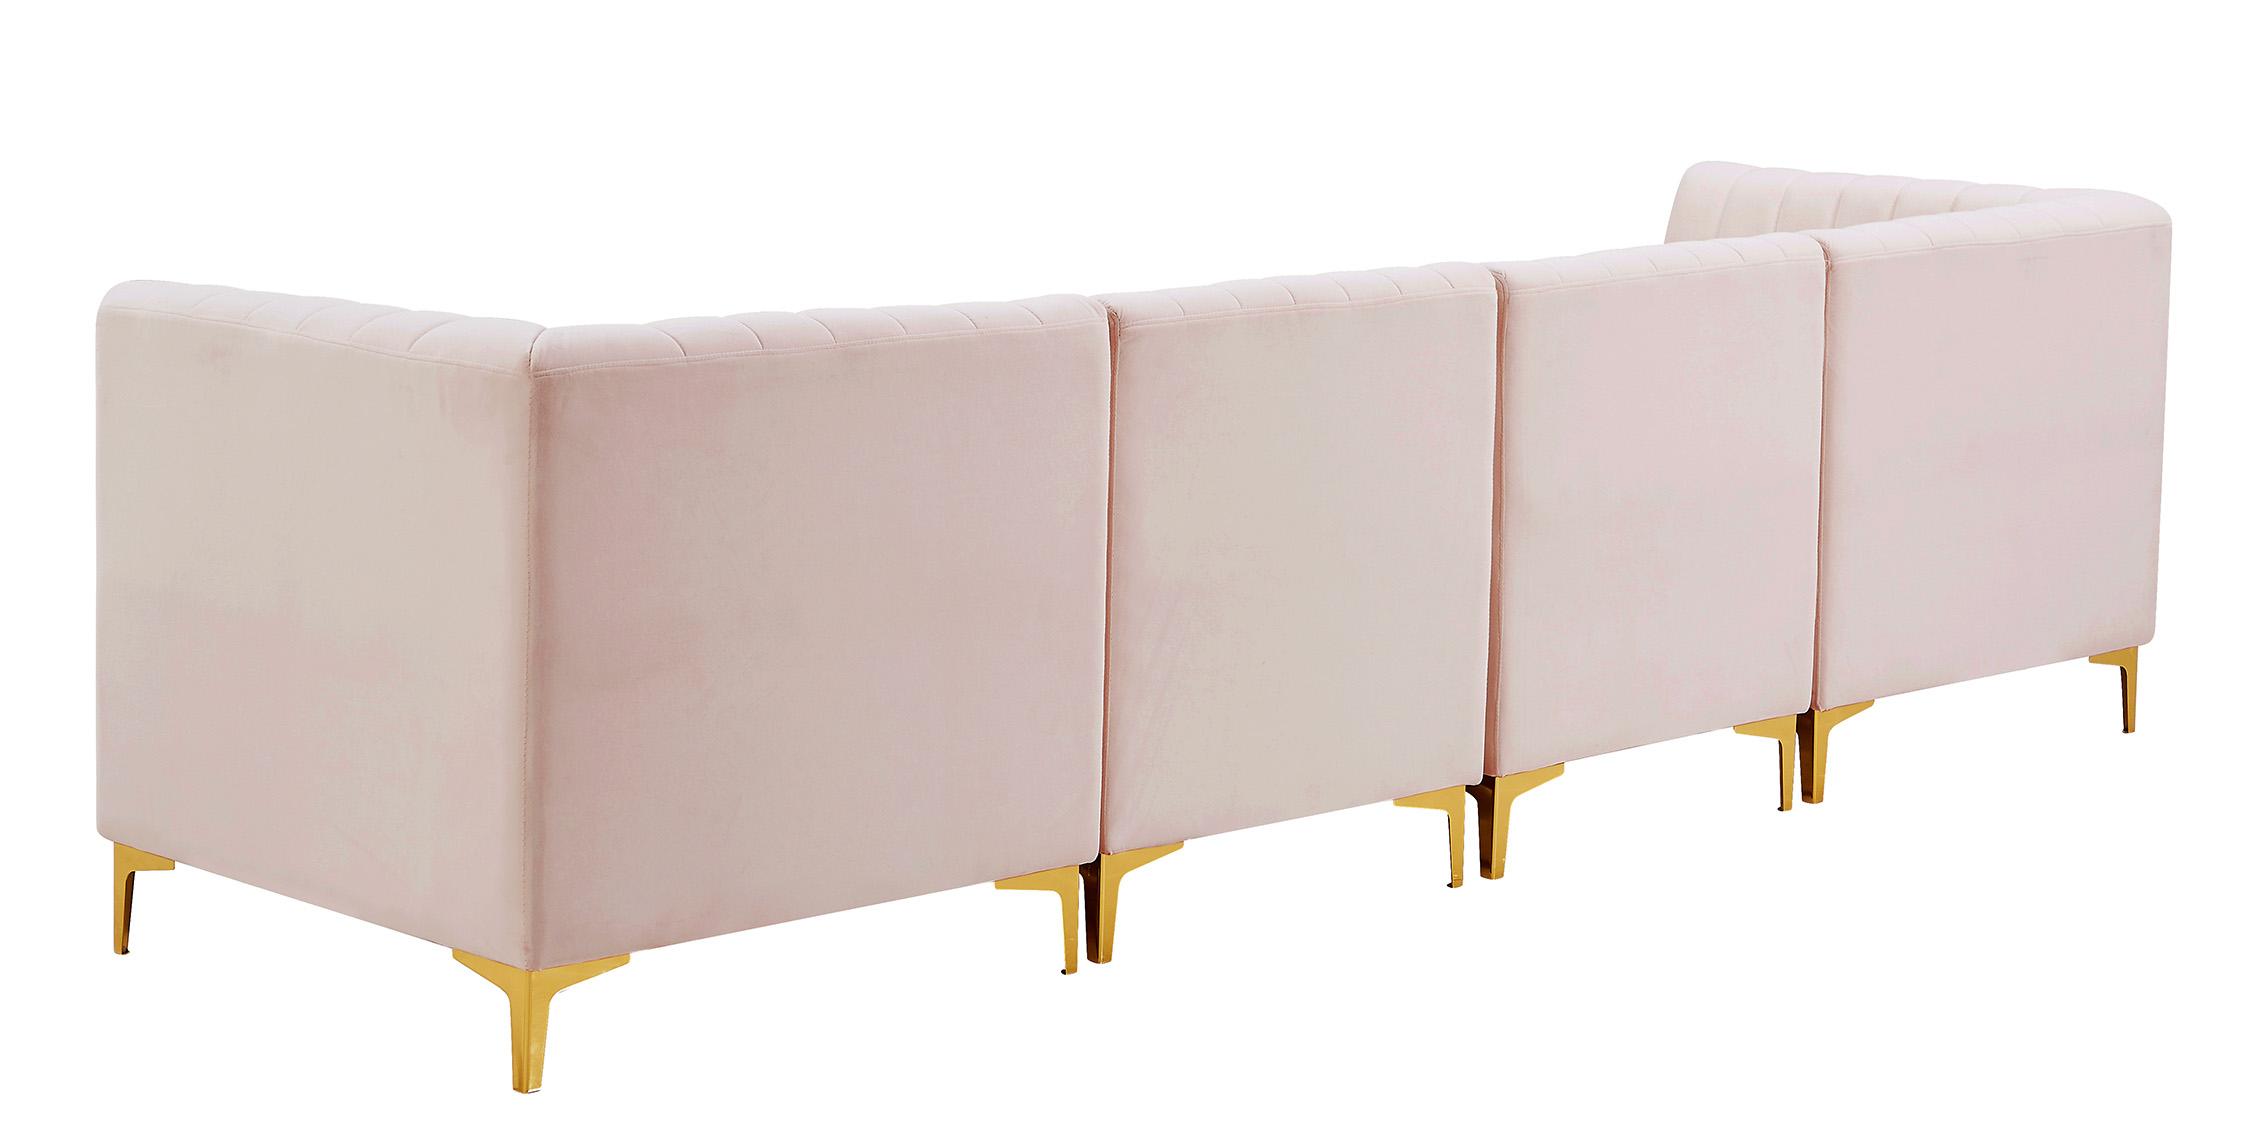 

    
604Pink-S119 Meridian Furniture Modular Sectional Sofa
